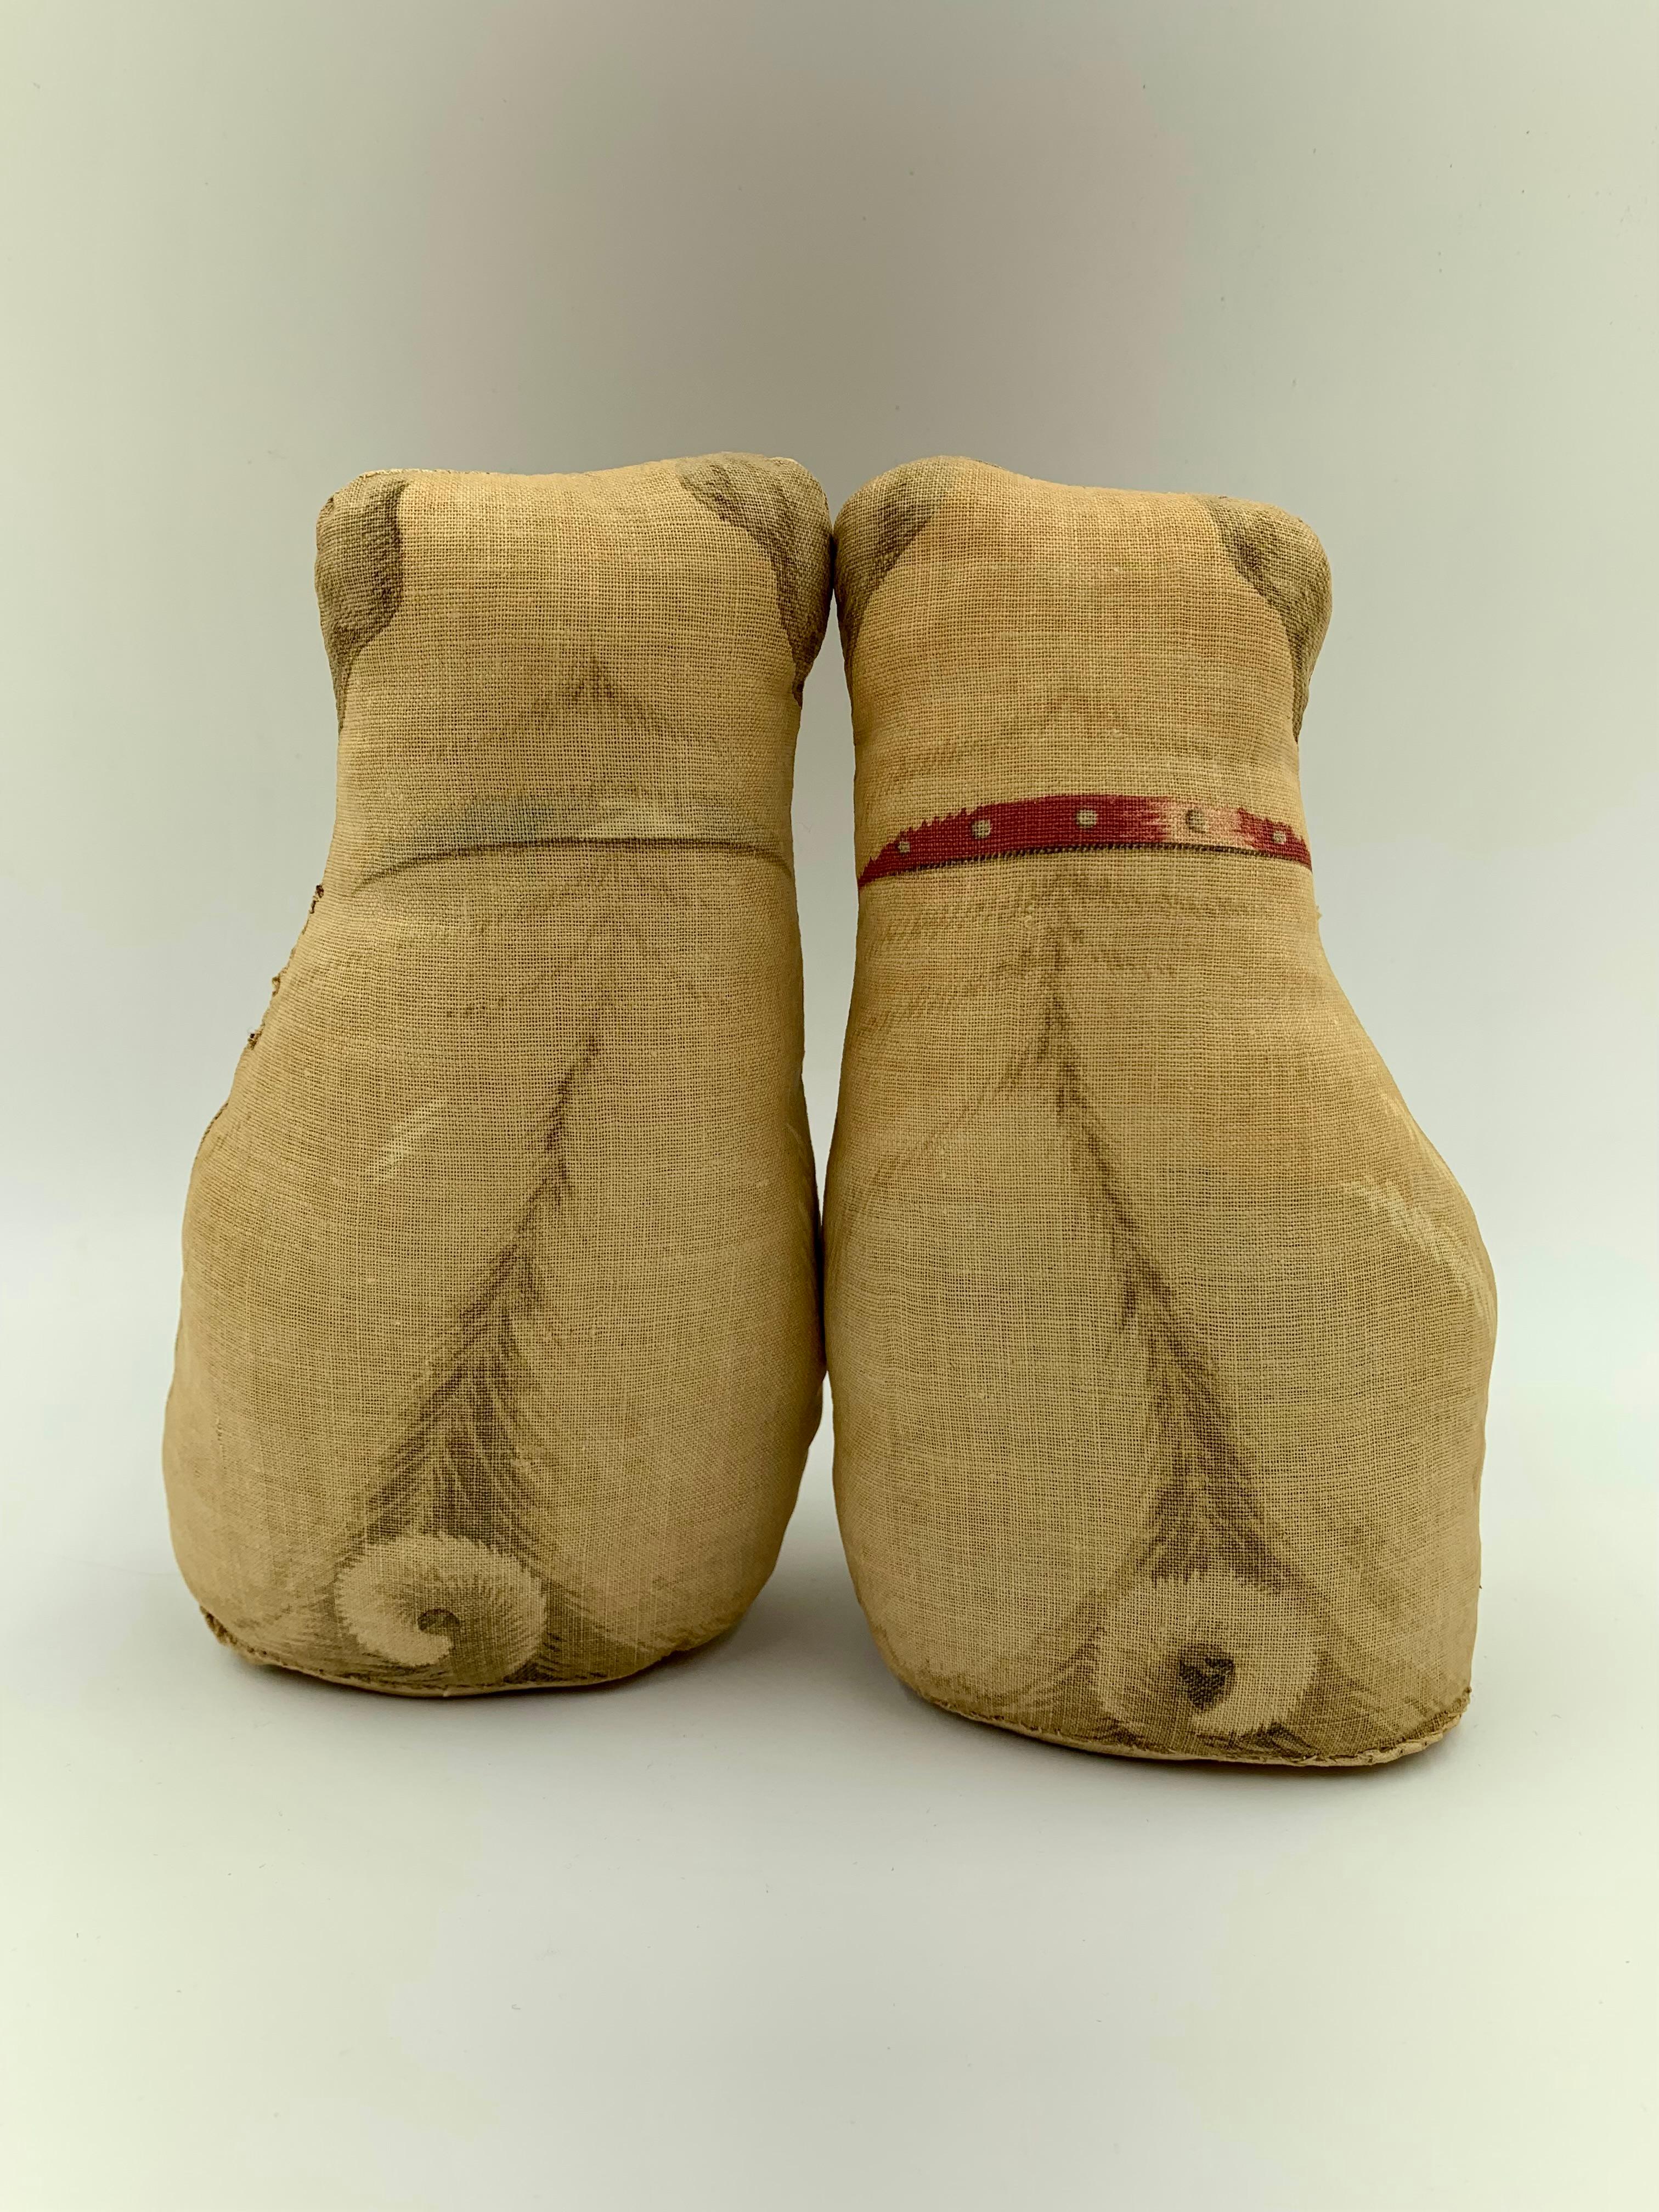 Bezauberndes Paar bedruckter Baumwollmopskissen aus dem frühen 20. Jahrhundert, die fast identisch sind mit einem Paar aus der Sammlung des Herzogs und der Herzogin von Windsor Sotheby's, Auktion vom 11. bis 19. September 1997
Bestehend aus einem